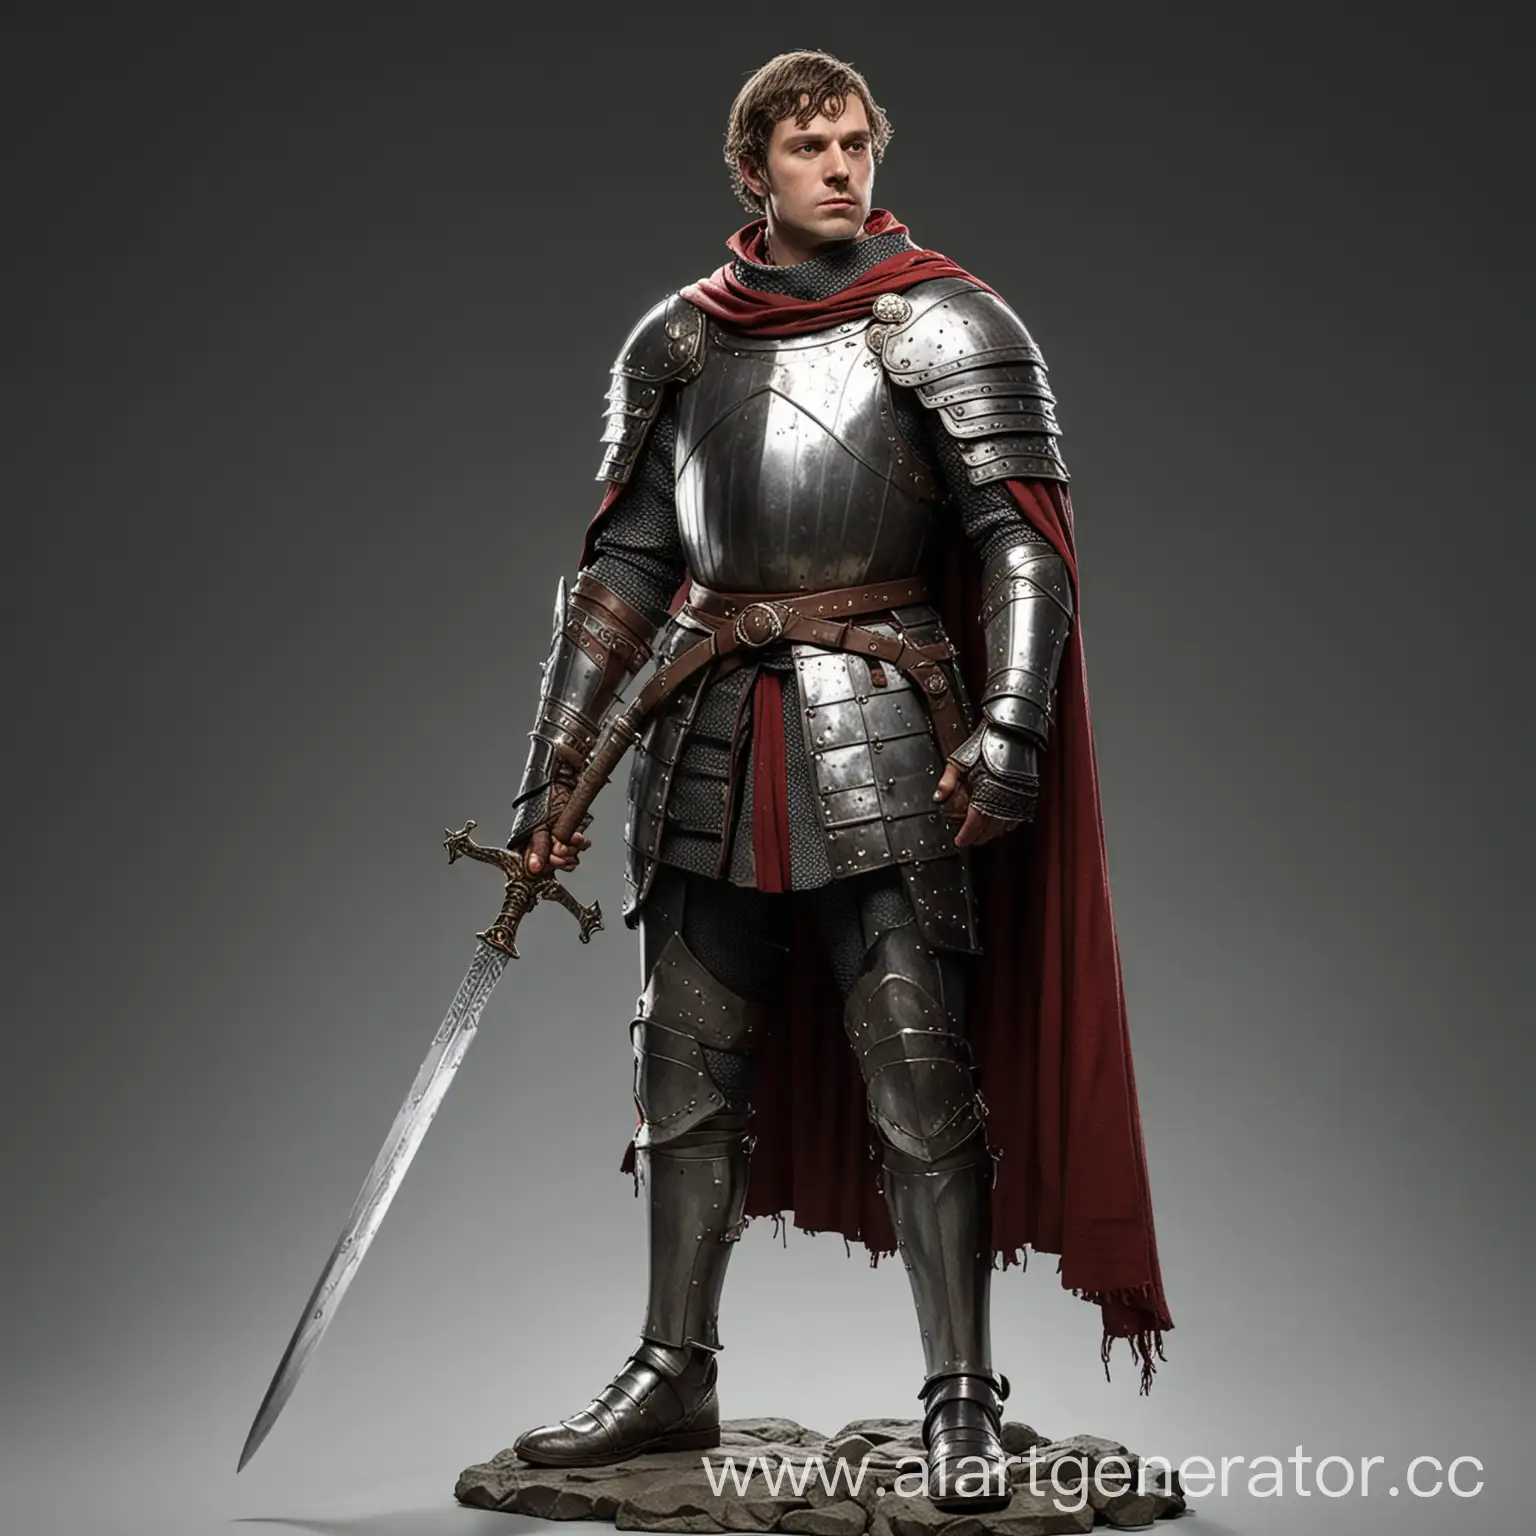 Мужчина рыцарь Хаттон стоит в полный рост в рыцарском облаченье, в одной руке держит серебряный меч.